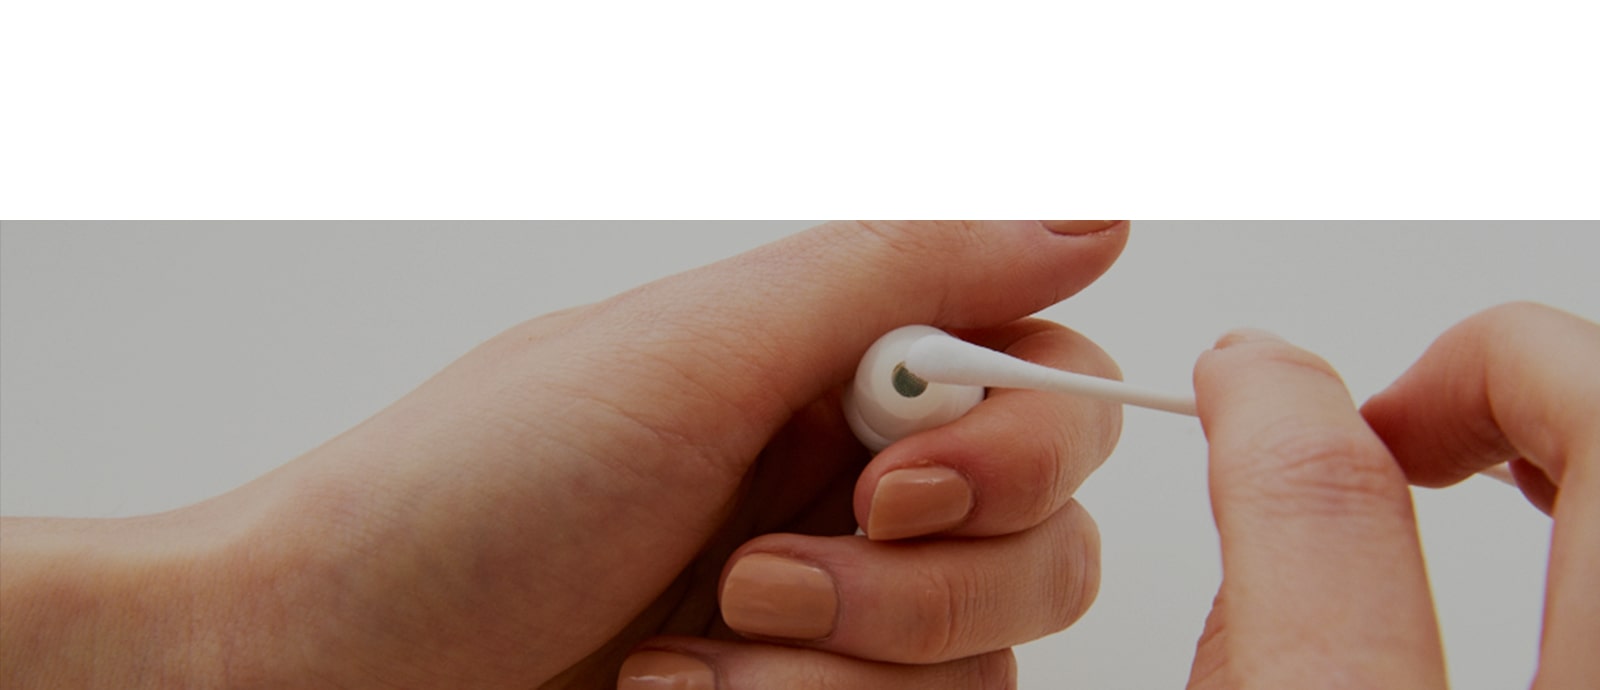 Een afbeelding van het in de hand houden van de oordopjes en het afvegen van de oordopjes met een wattenstaafje, waarmee de bacteriën in de oordopjes tot uitdrukking wordt gebracht.